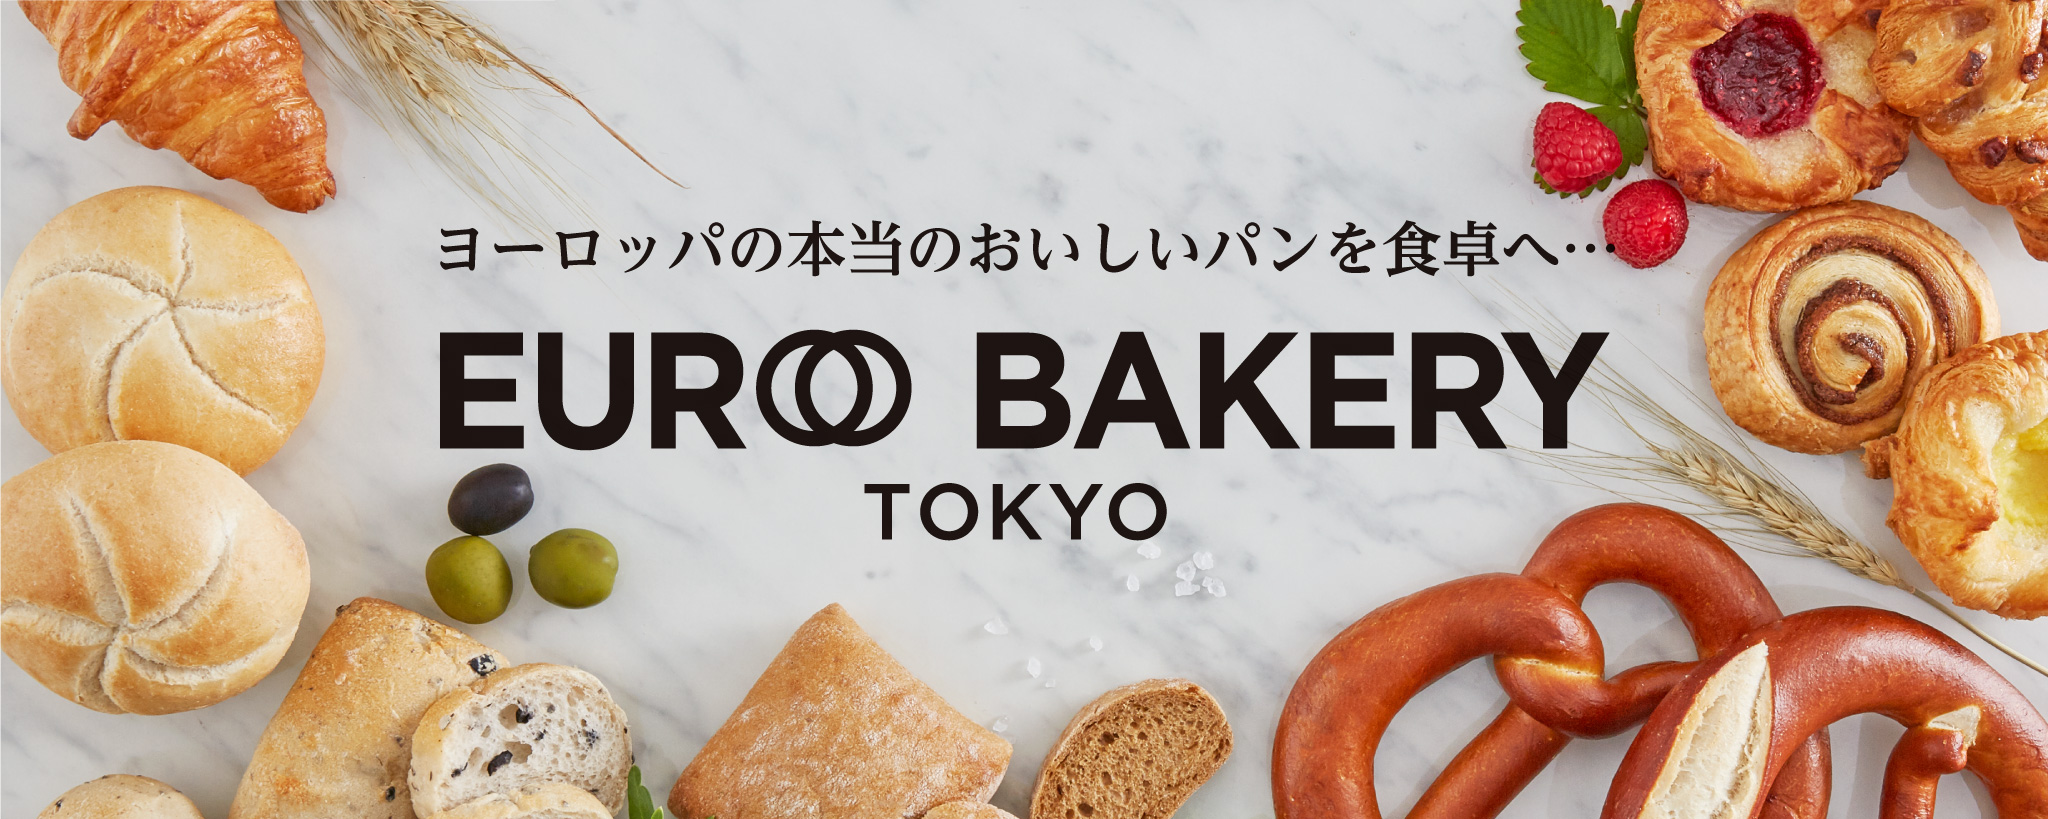 EURO BAKERY TOKYO（ユーロ ベーカリー トーキョー）本当に美味しいヨーロッパのパンを食卓へ